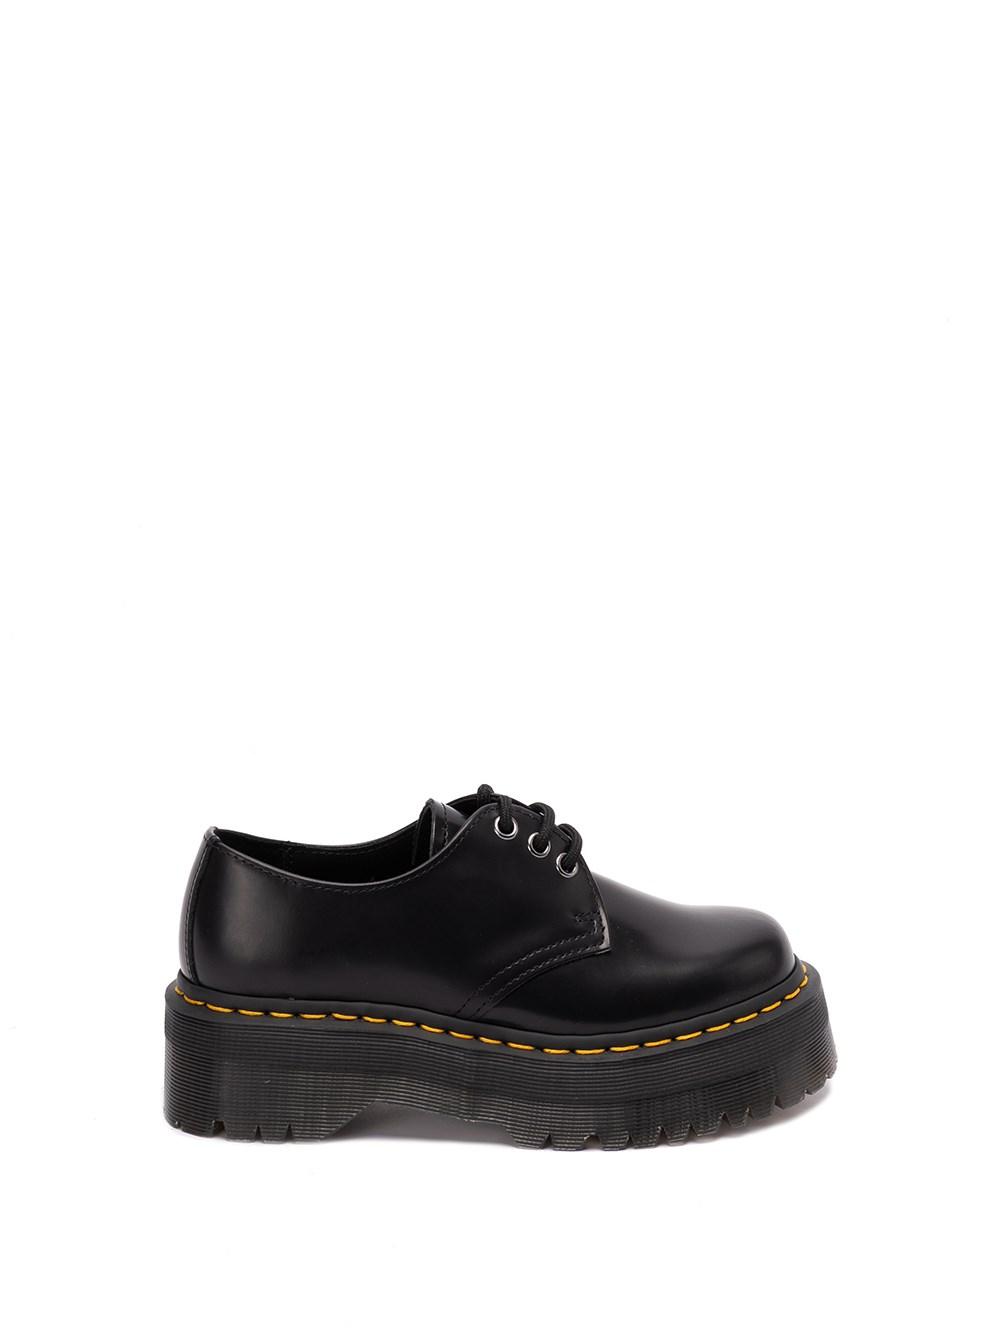 Dr. Martens `1461 Quad` Leather Platform Shoes in Black | Lyst